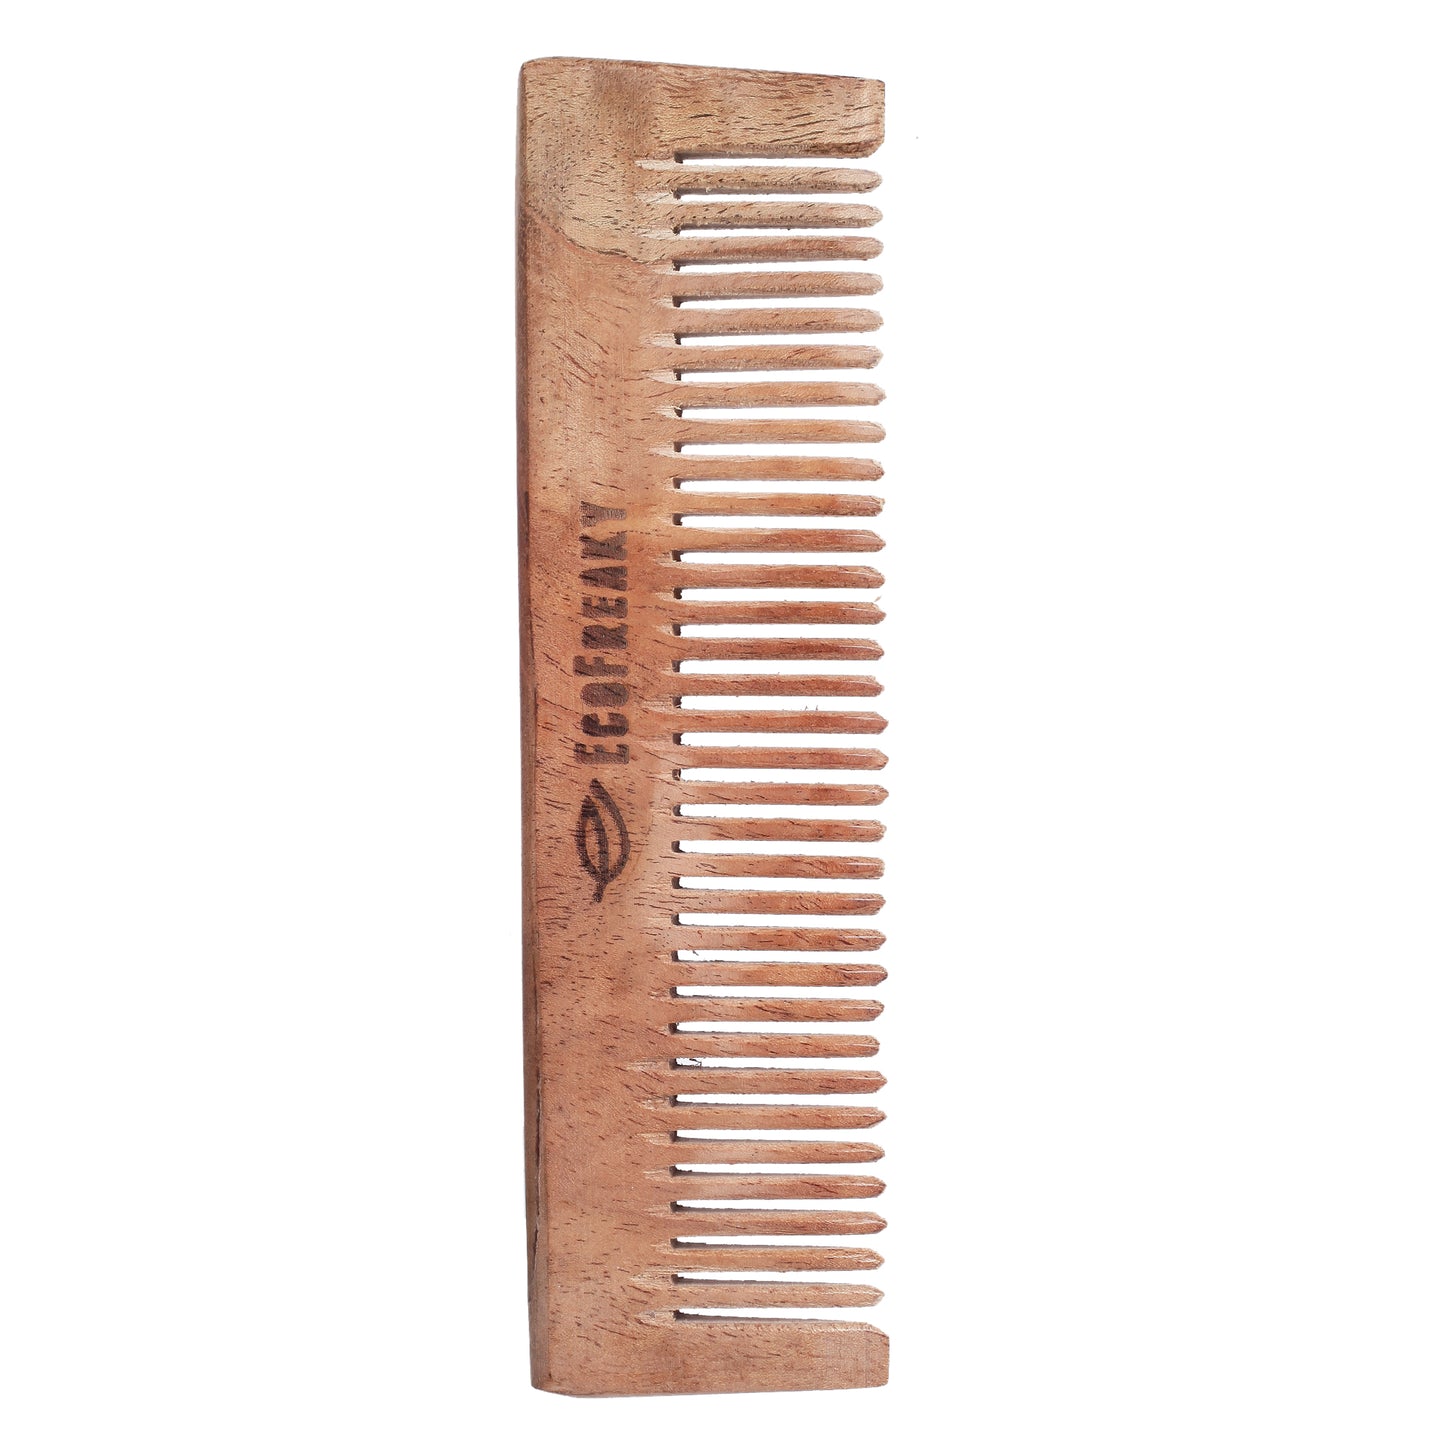 Pure Neem Wood Pocket Comb | Antibacterial Wooden Comb